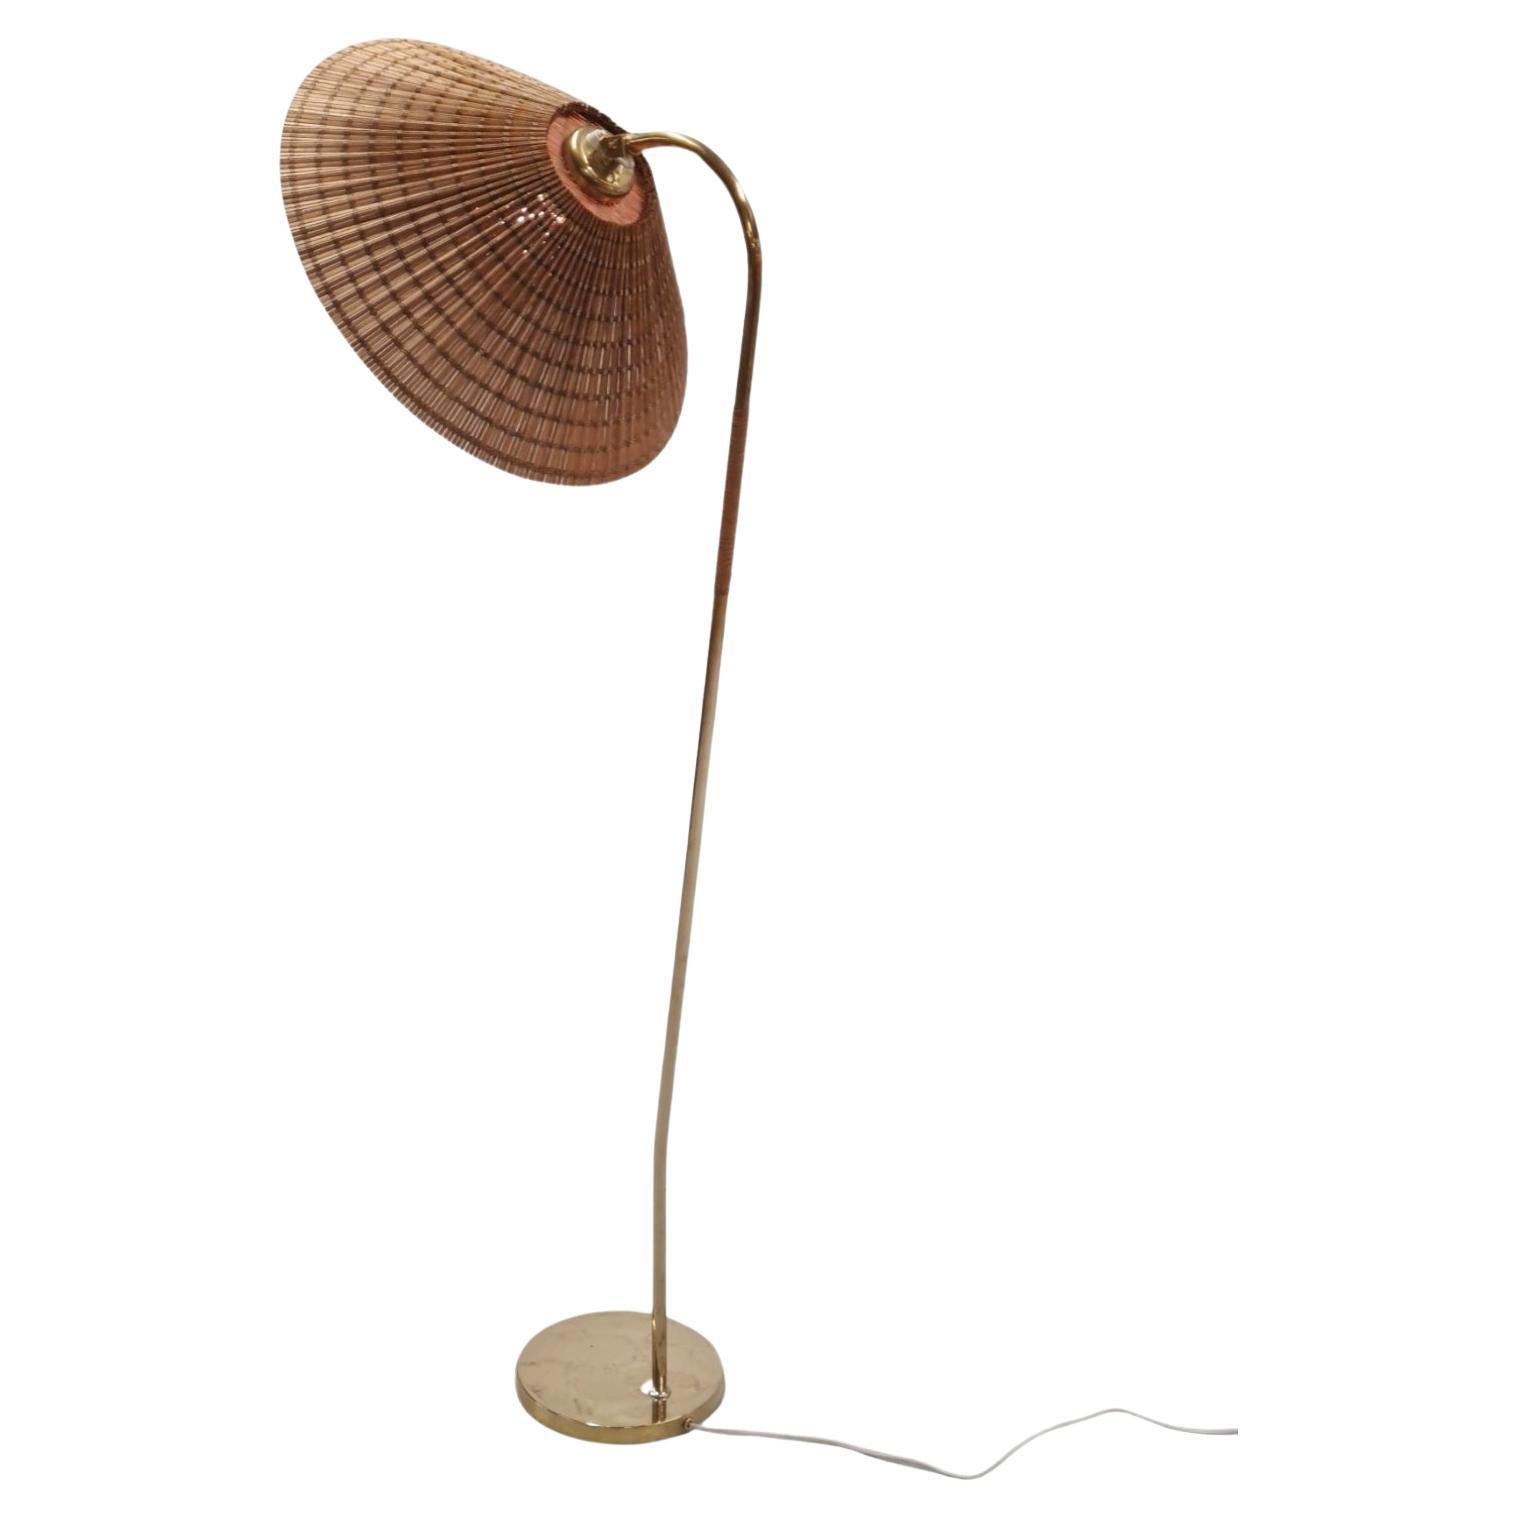 Eine seltene und schöne Stehlampe aus Messing (Rattan am Stiel) und Rattan-Schirm, entworfen von Gunnel Nyman und hergestellt von Idman. Dieses Modell wurde aufgrund der spärlichen Dokumentation oft mit einem Tynell verwechselt, aber als das Design